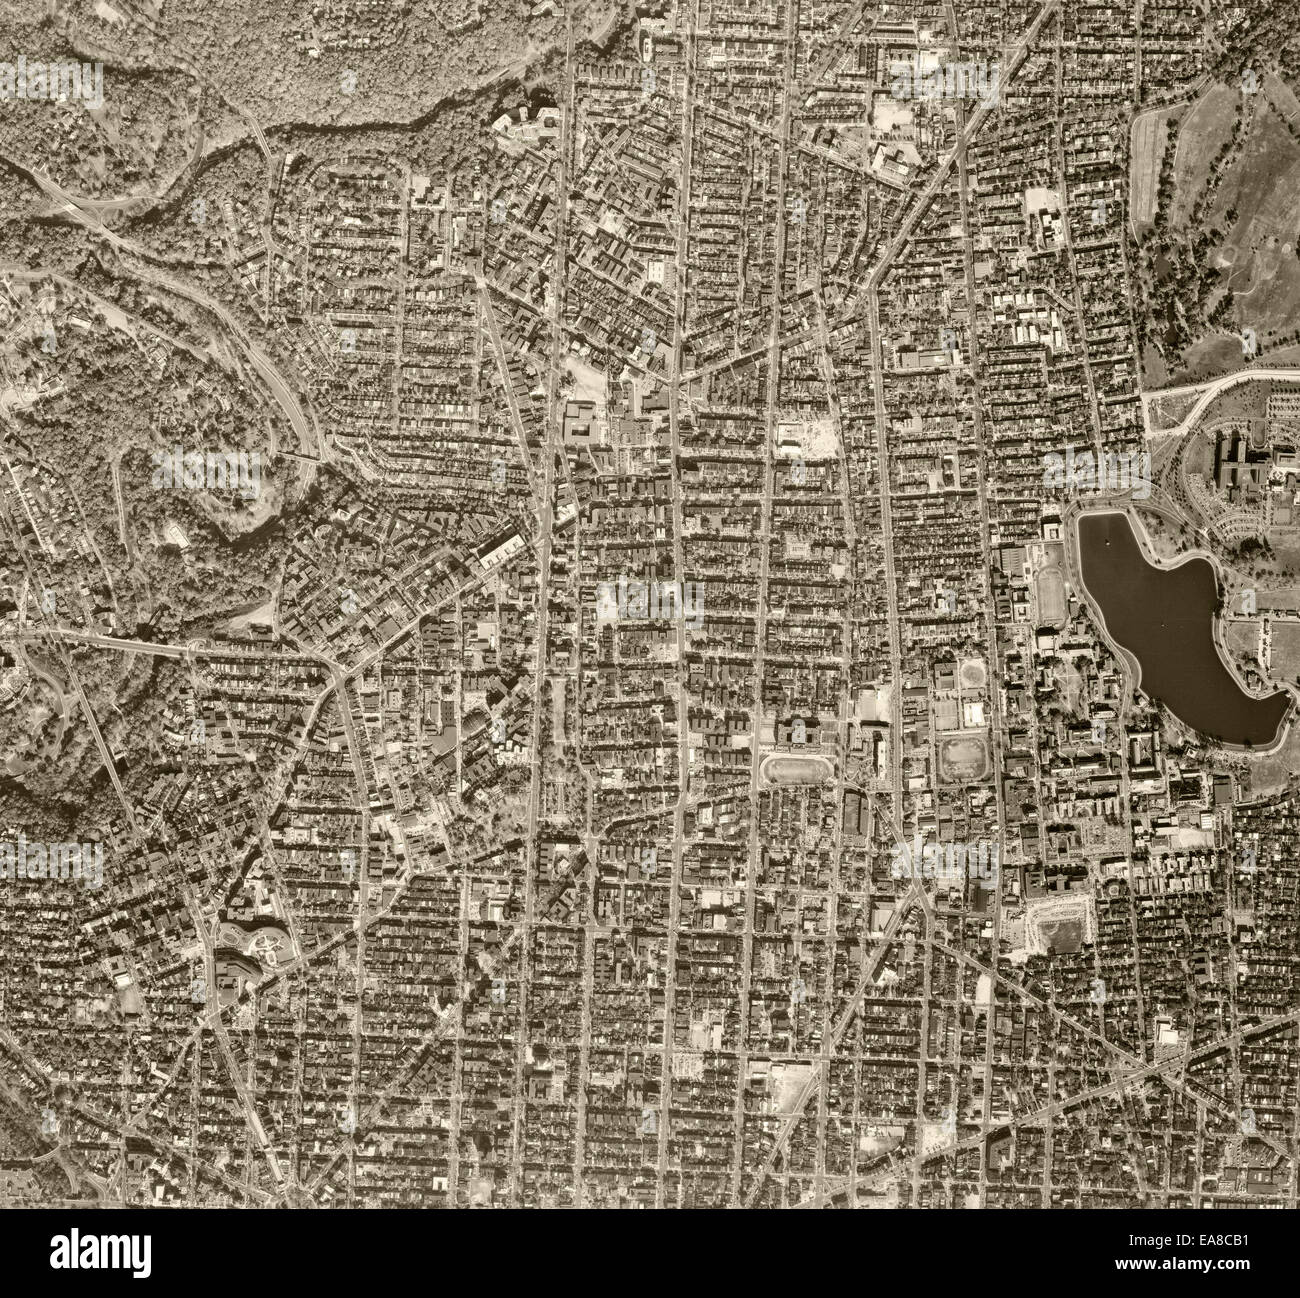 Fotografía aérea histórica de Washington, DC, 1968 Foto de stock